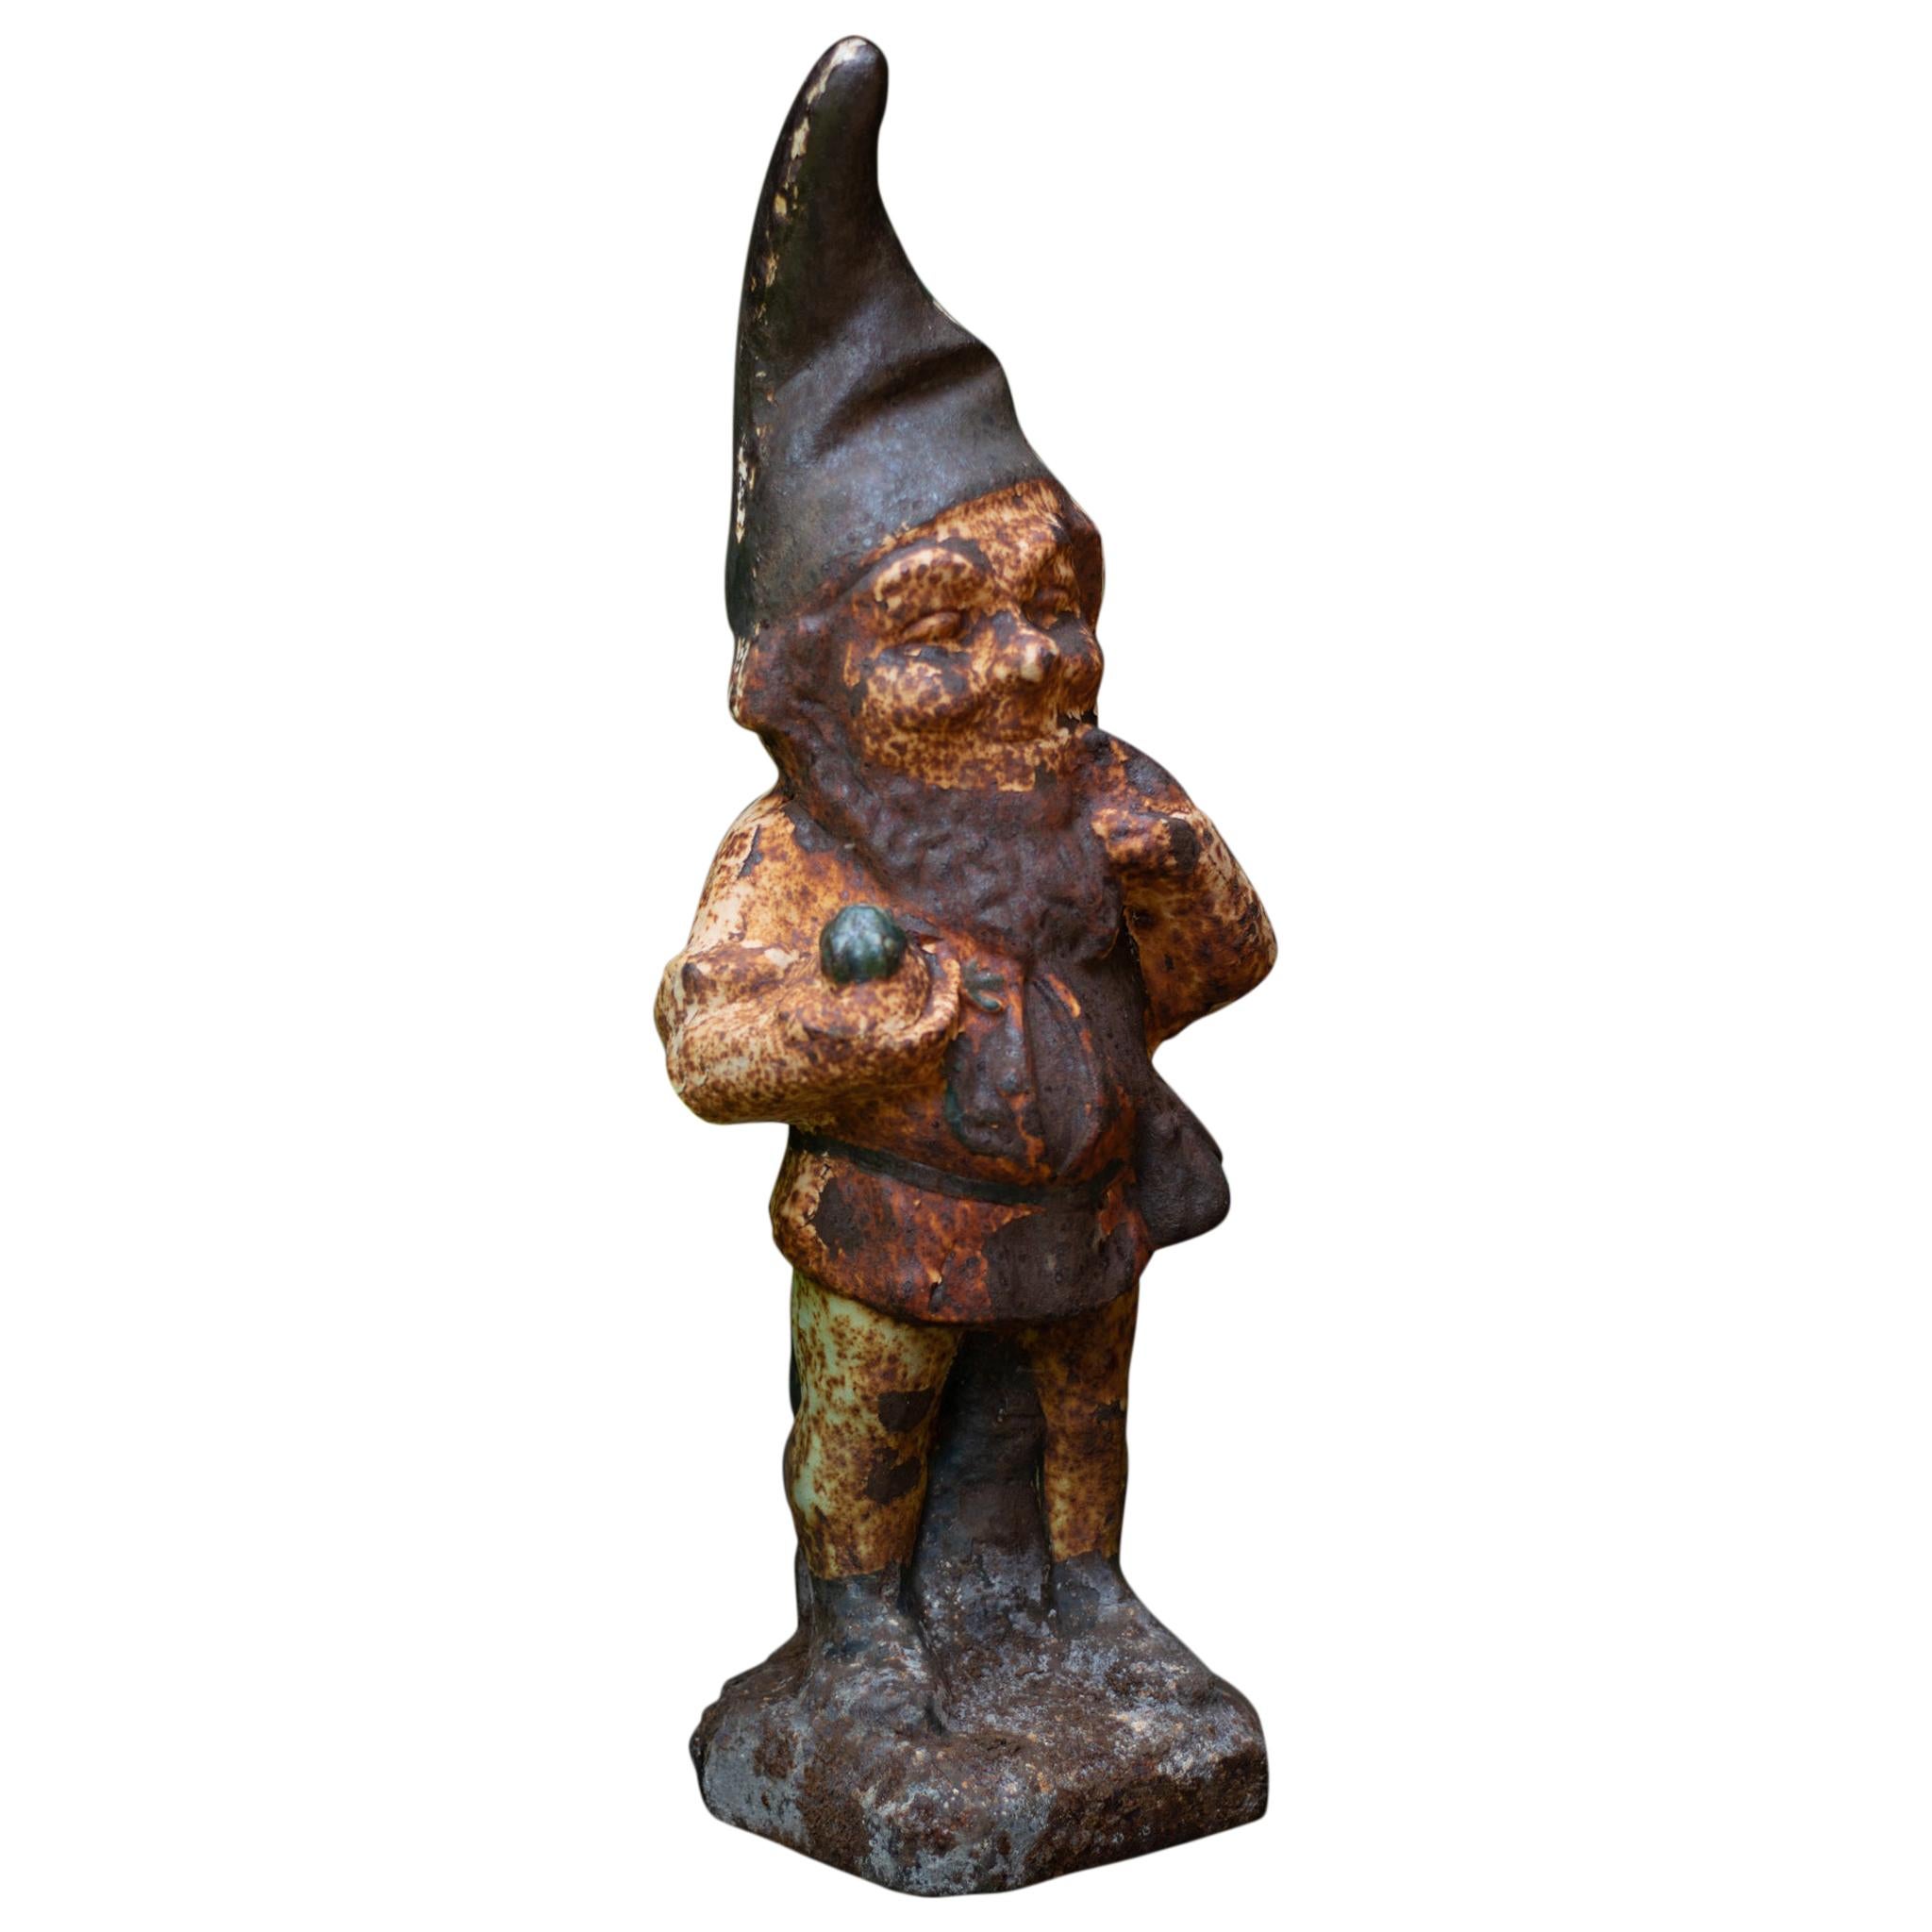 Rusty Vintage Garden Gnome